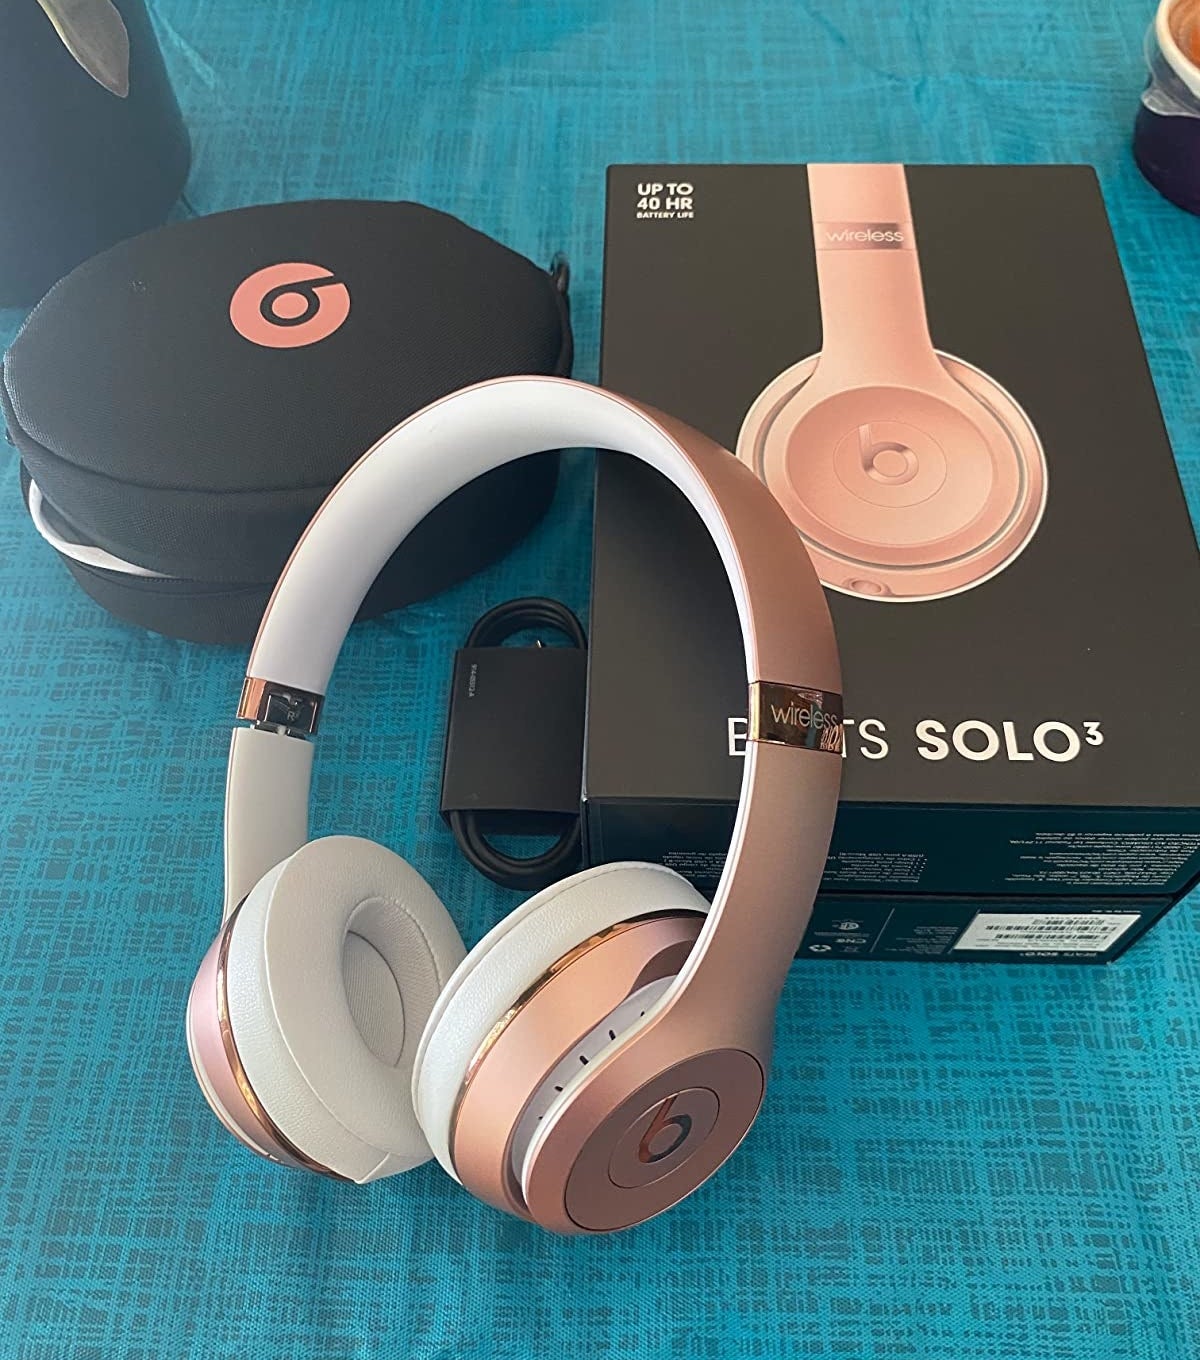 the pink beats headphones